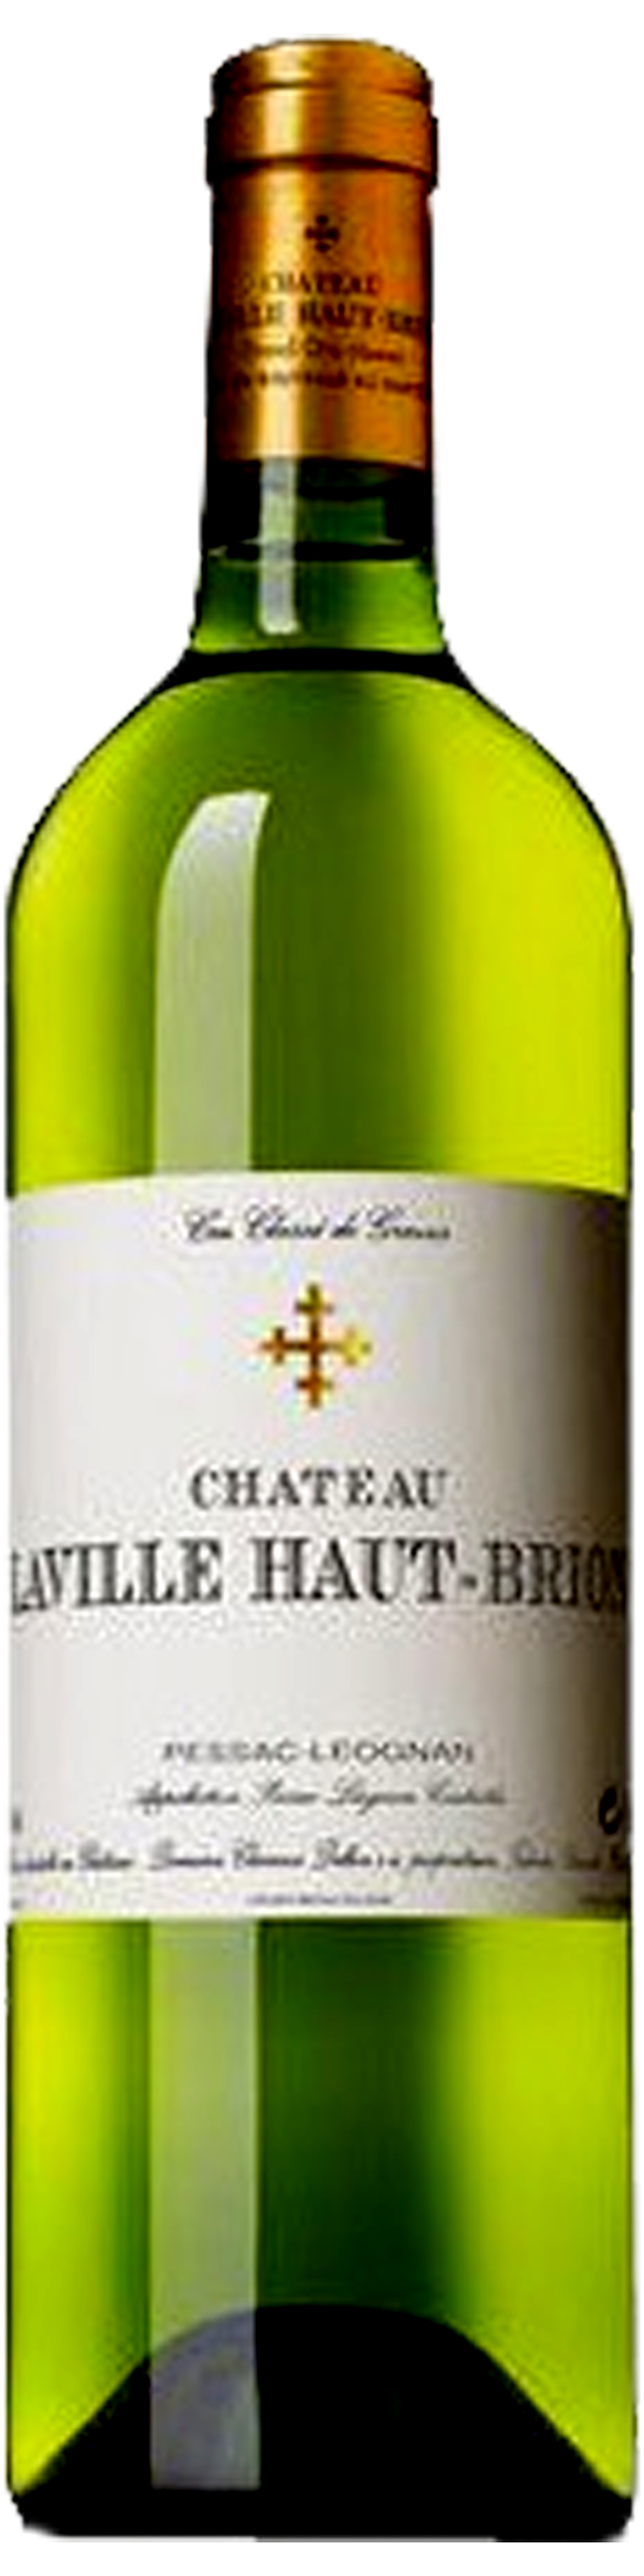 Image of product Château Laville Haut Brion Blanc, Cr Classé Graves